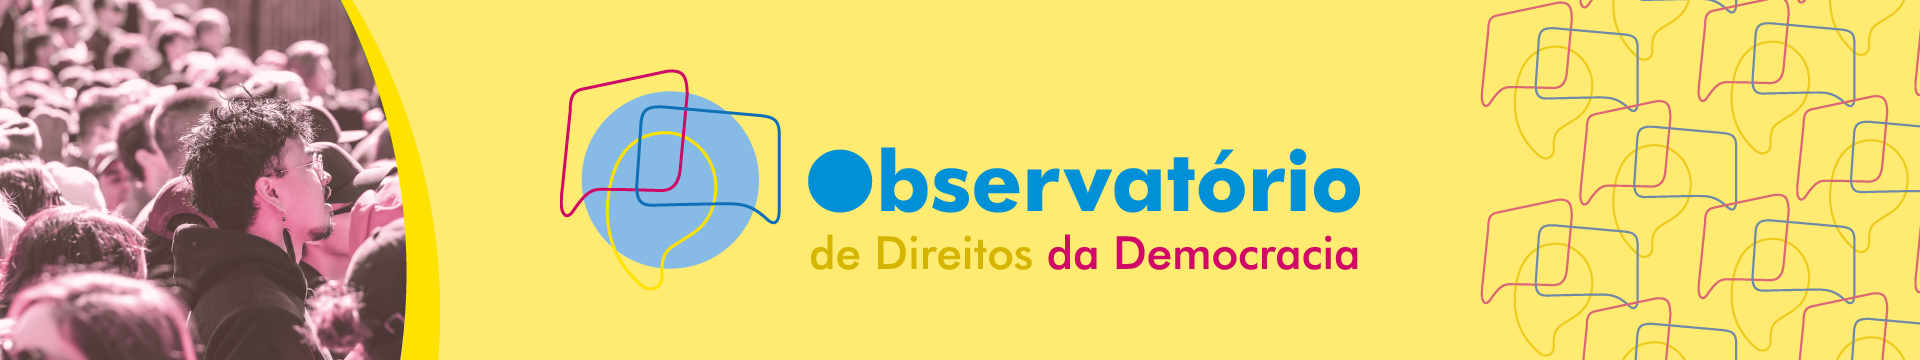 banner-Observatorio-de-Direitos-da-Democracia.png